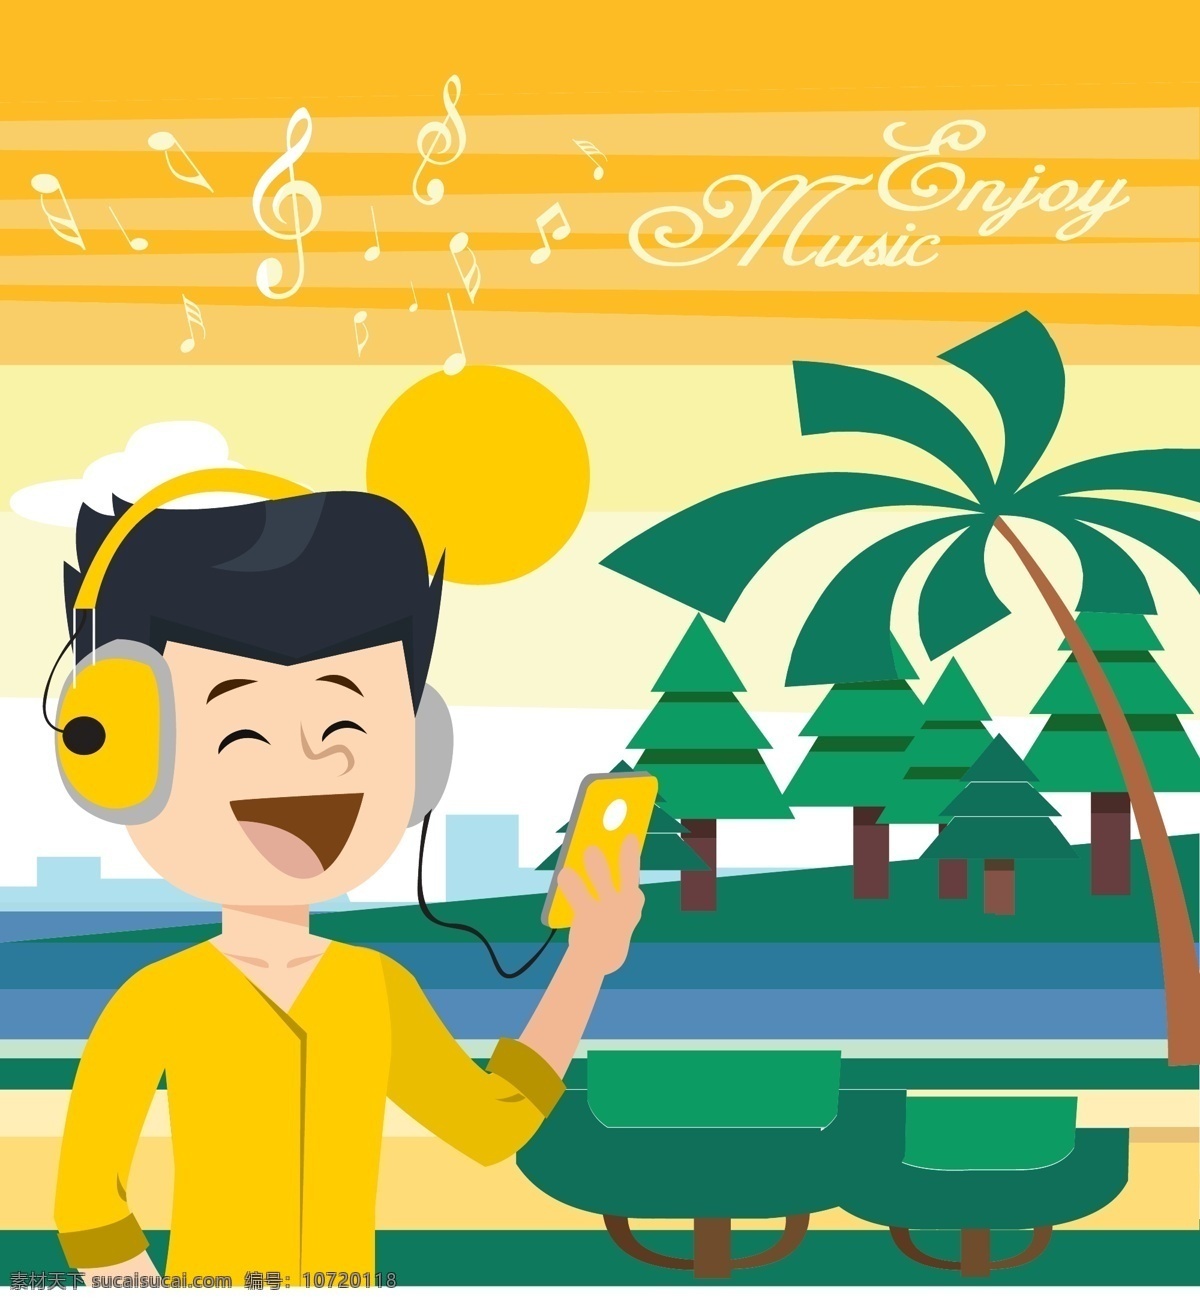 享受 音乐 度假 插画 度假插画 旅游 矢量素材 椰树 树木 商业插画 音符